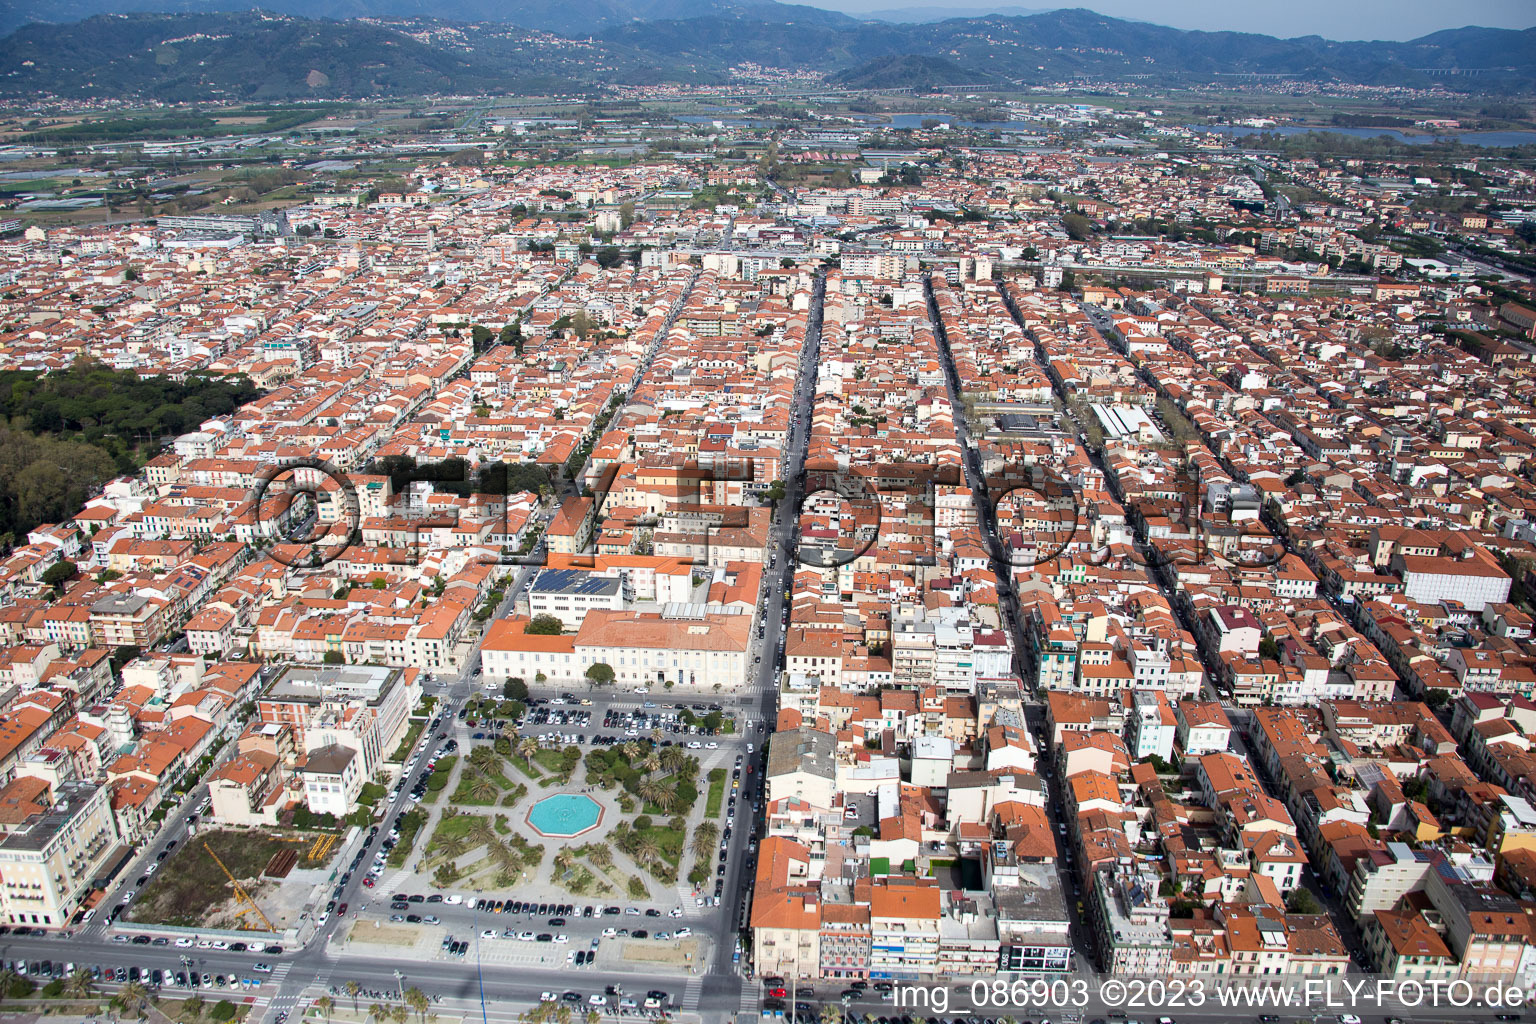 Viareggio dans le département Toscane, Italie du point de vue du drone